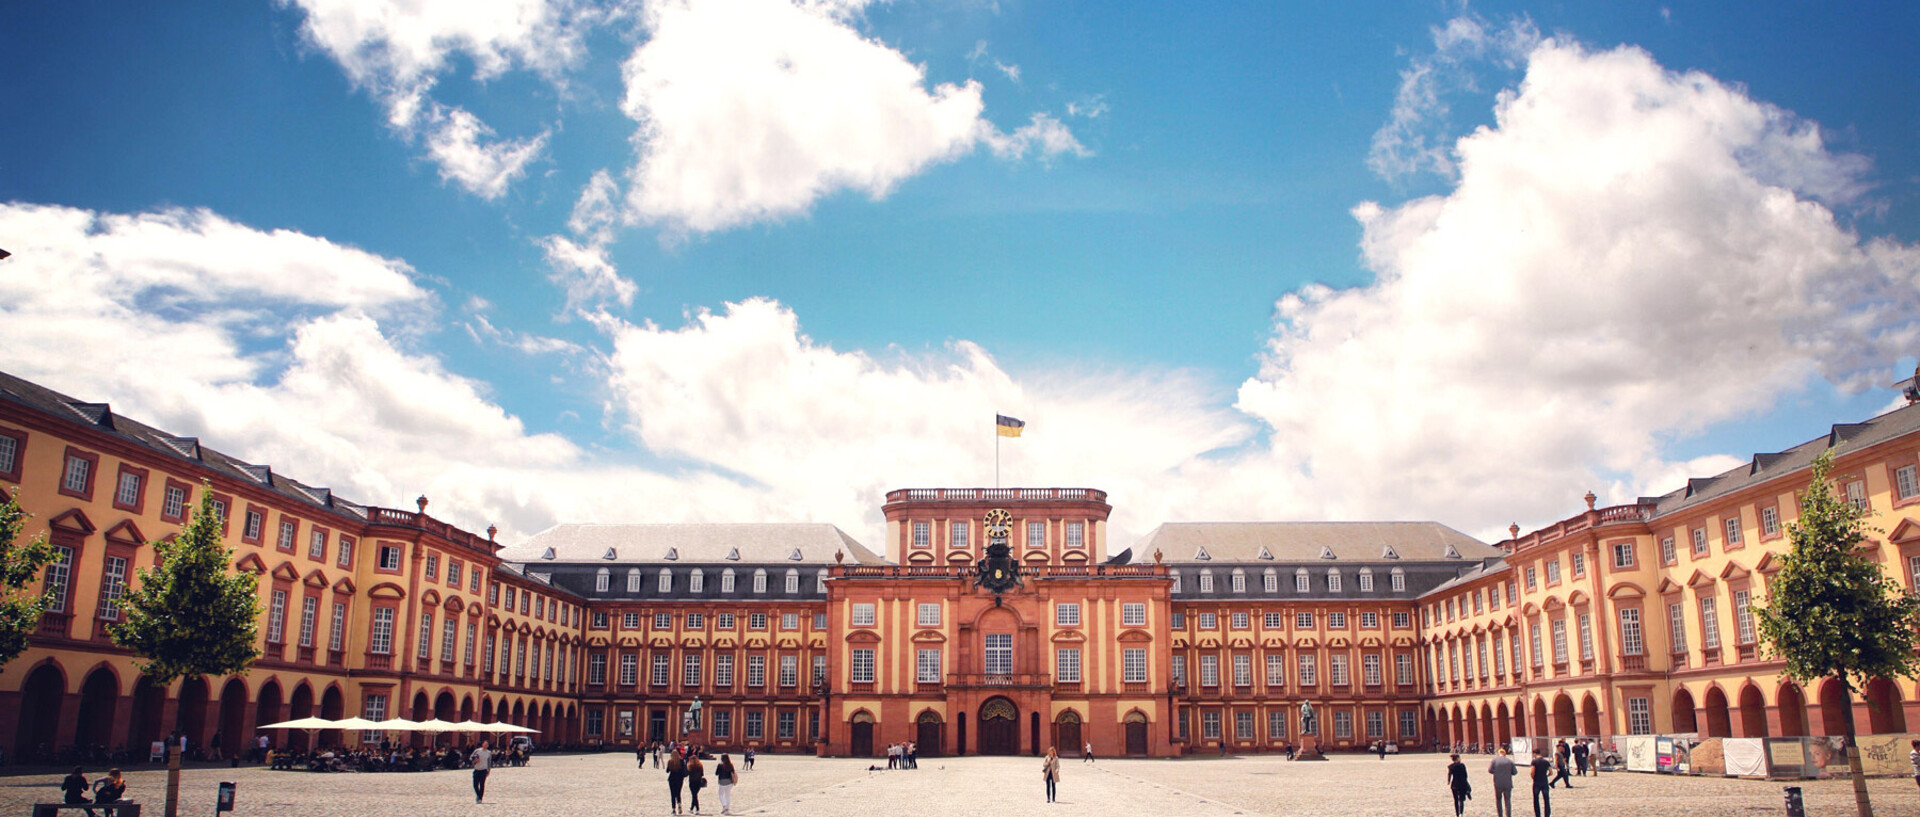 Das Mannheimer Schloss und der Ehrenhof unter strahlend blauem Himmel